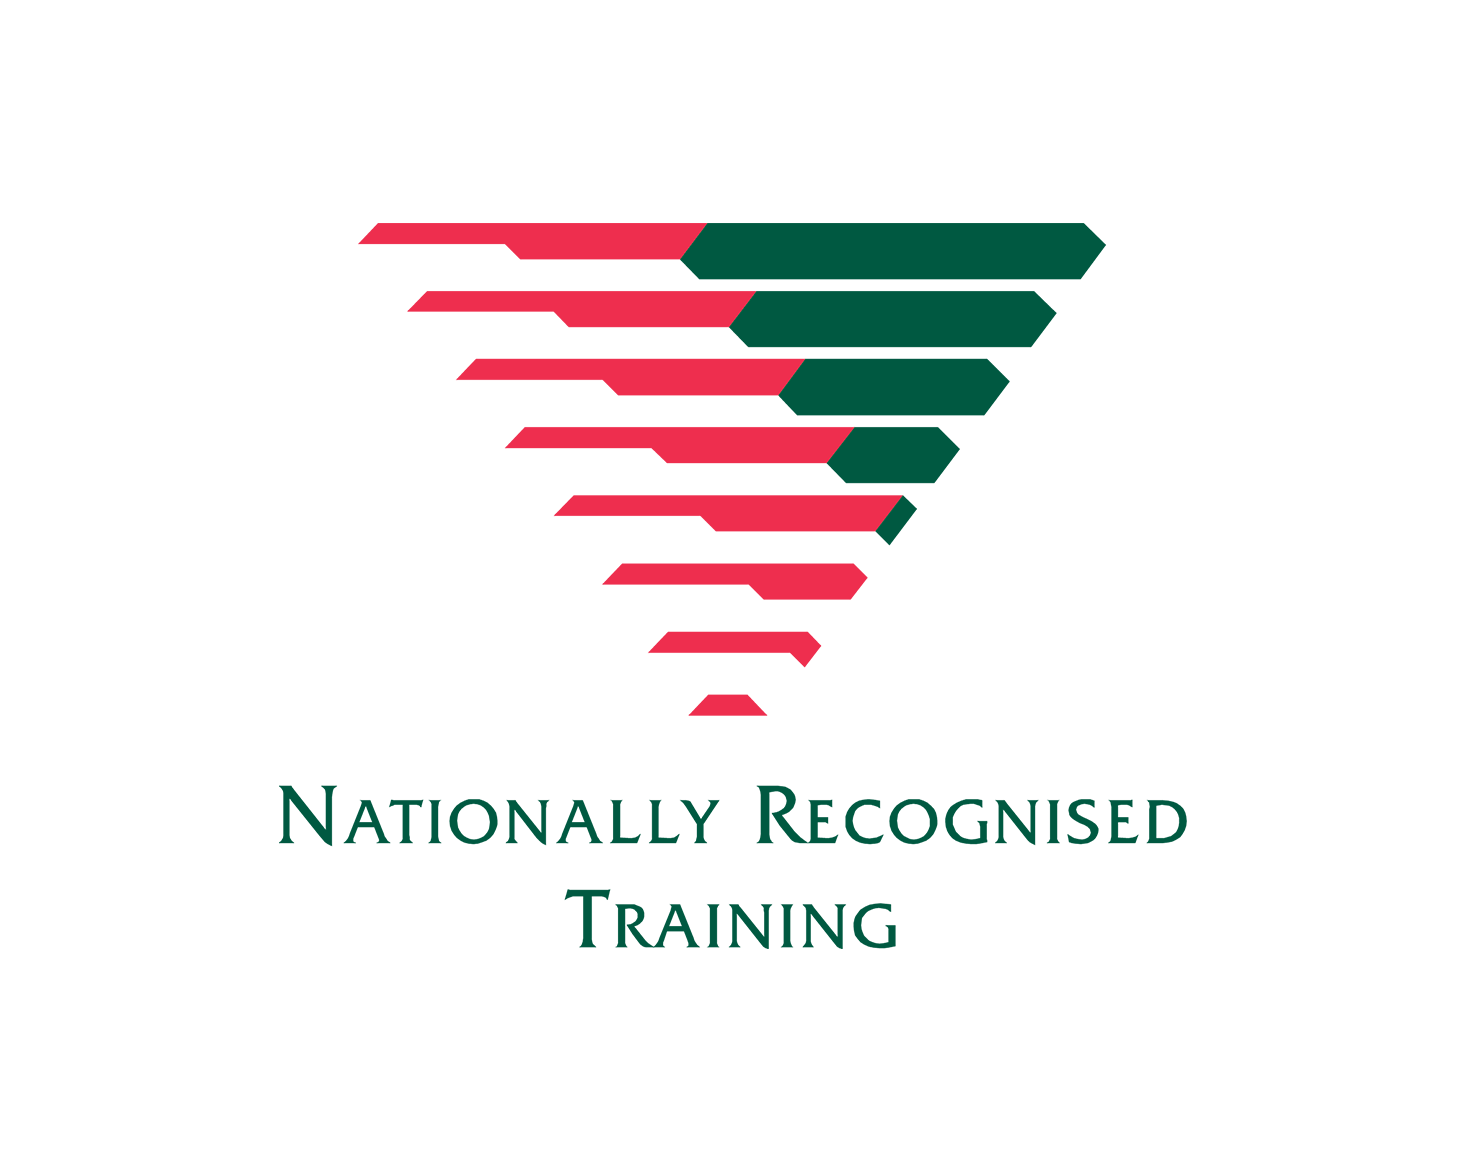 NRT Logo